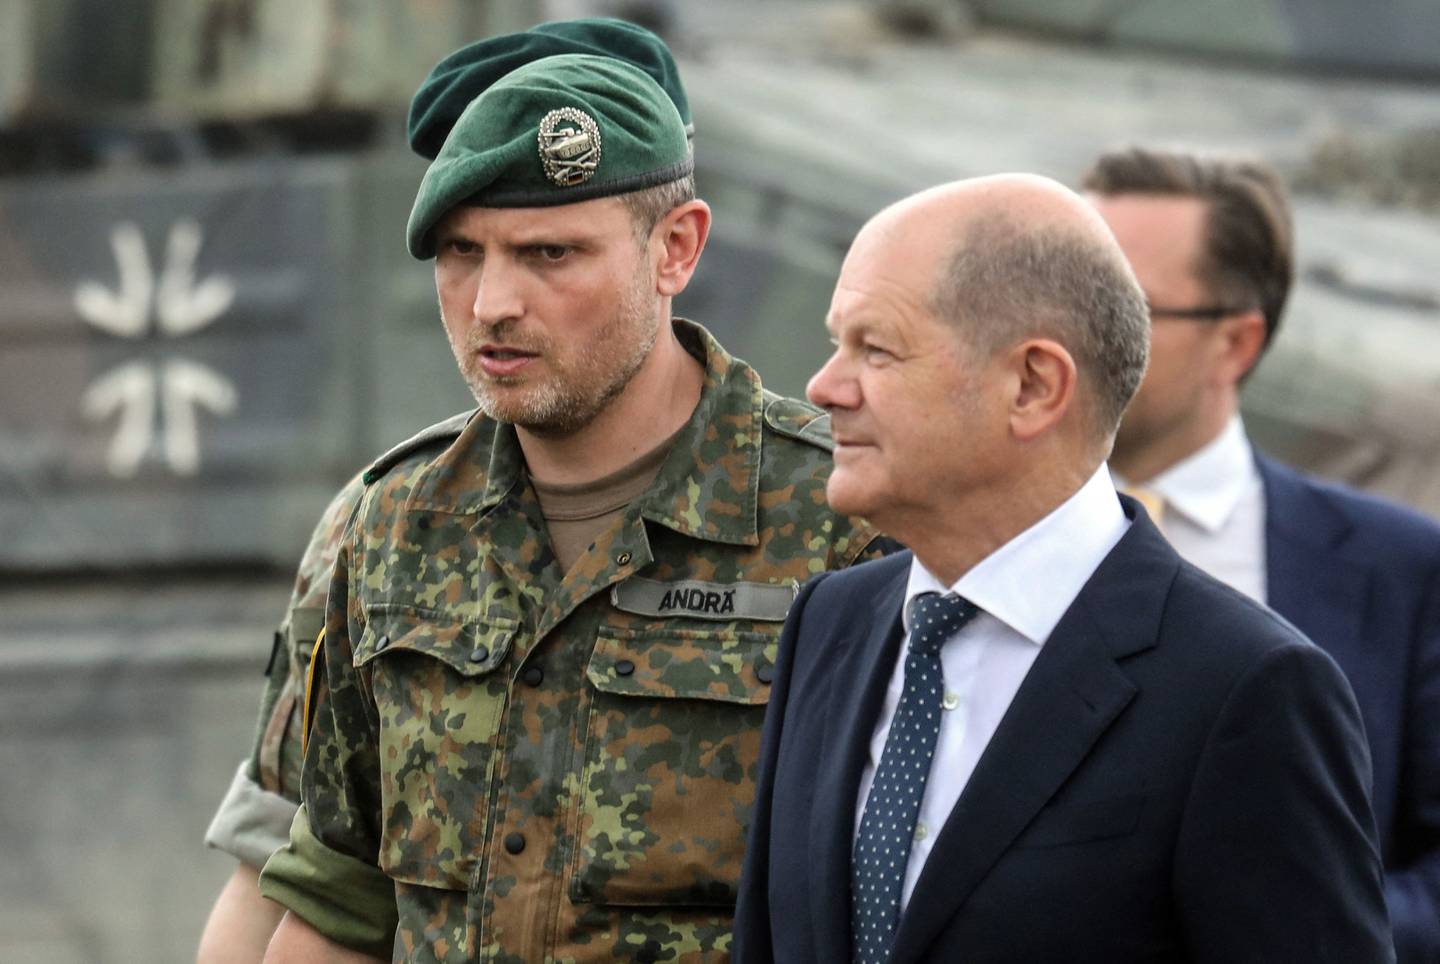 Alemania lista para reforzar presencia militar en bálticos | La Nación